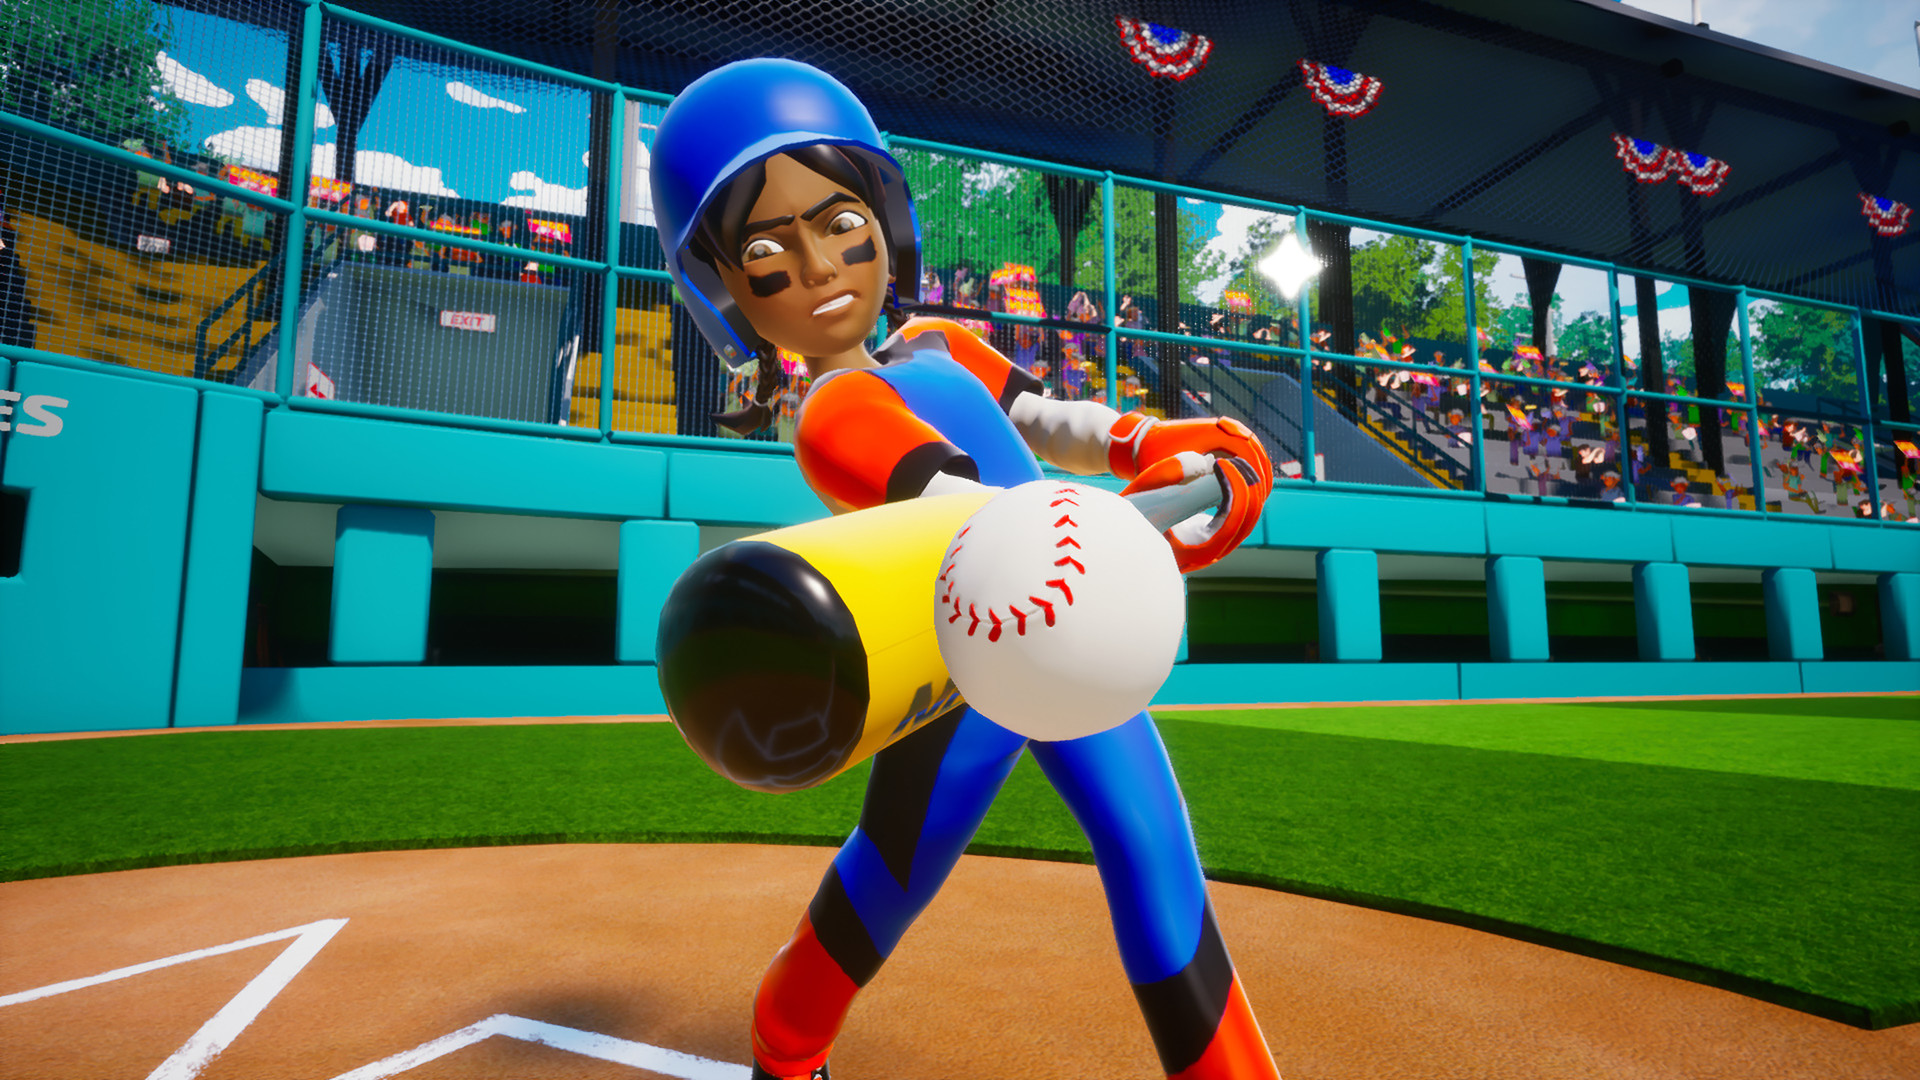 Little League World Series Baseball 2022 Steam CD Key 0.59$